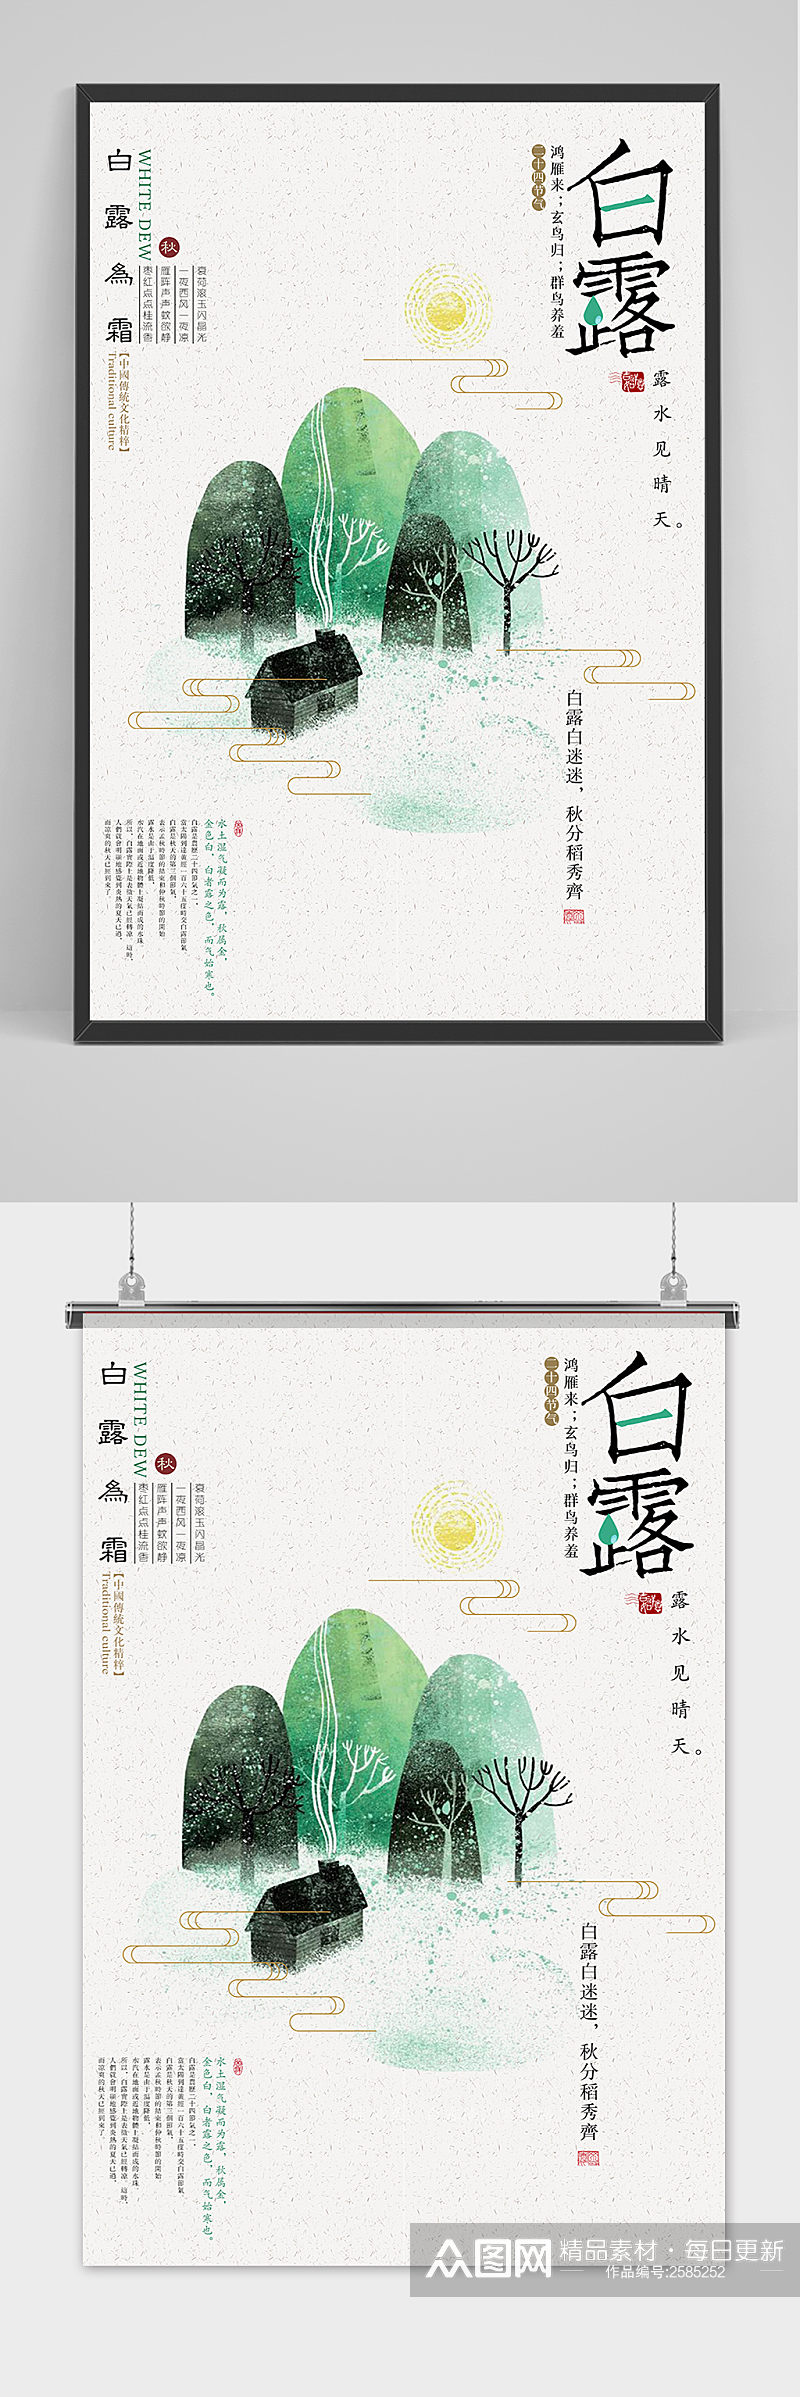 绿色大气中国传统24节气白露节海报素材